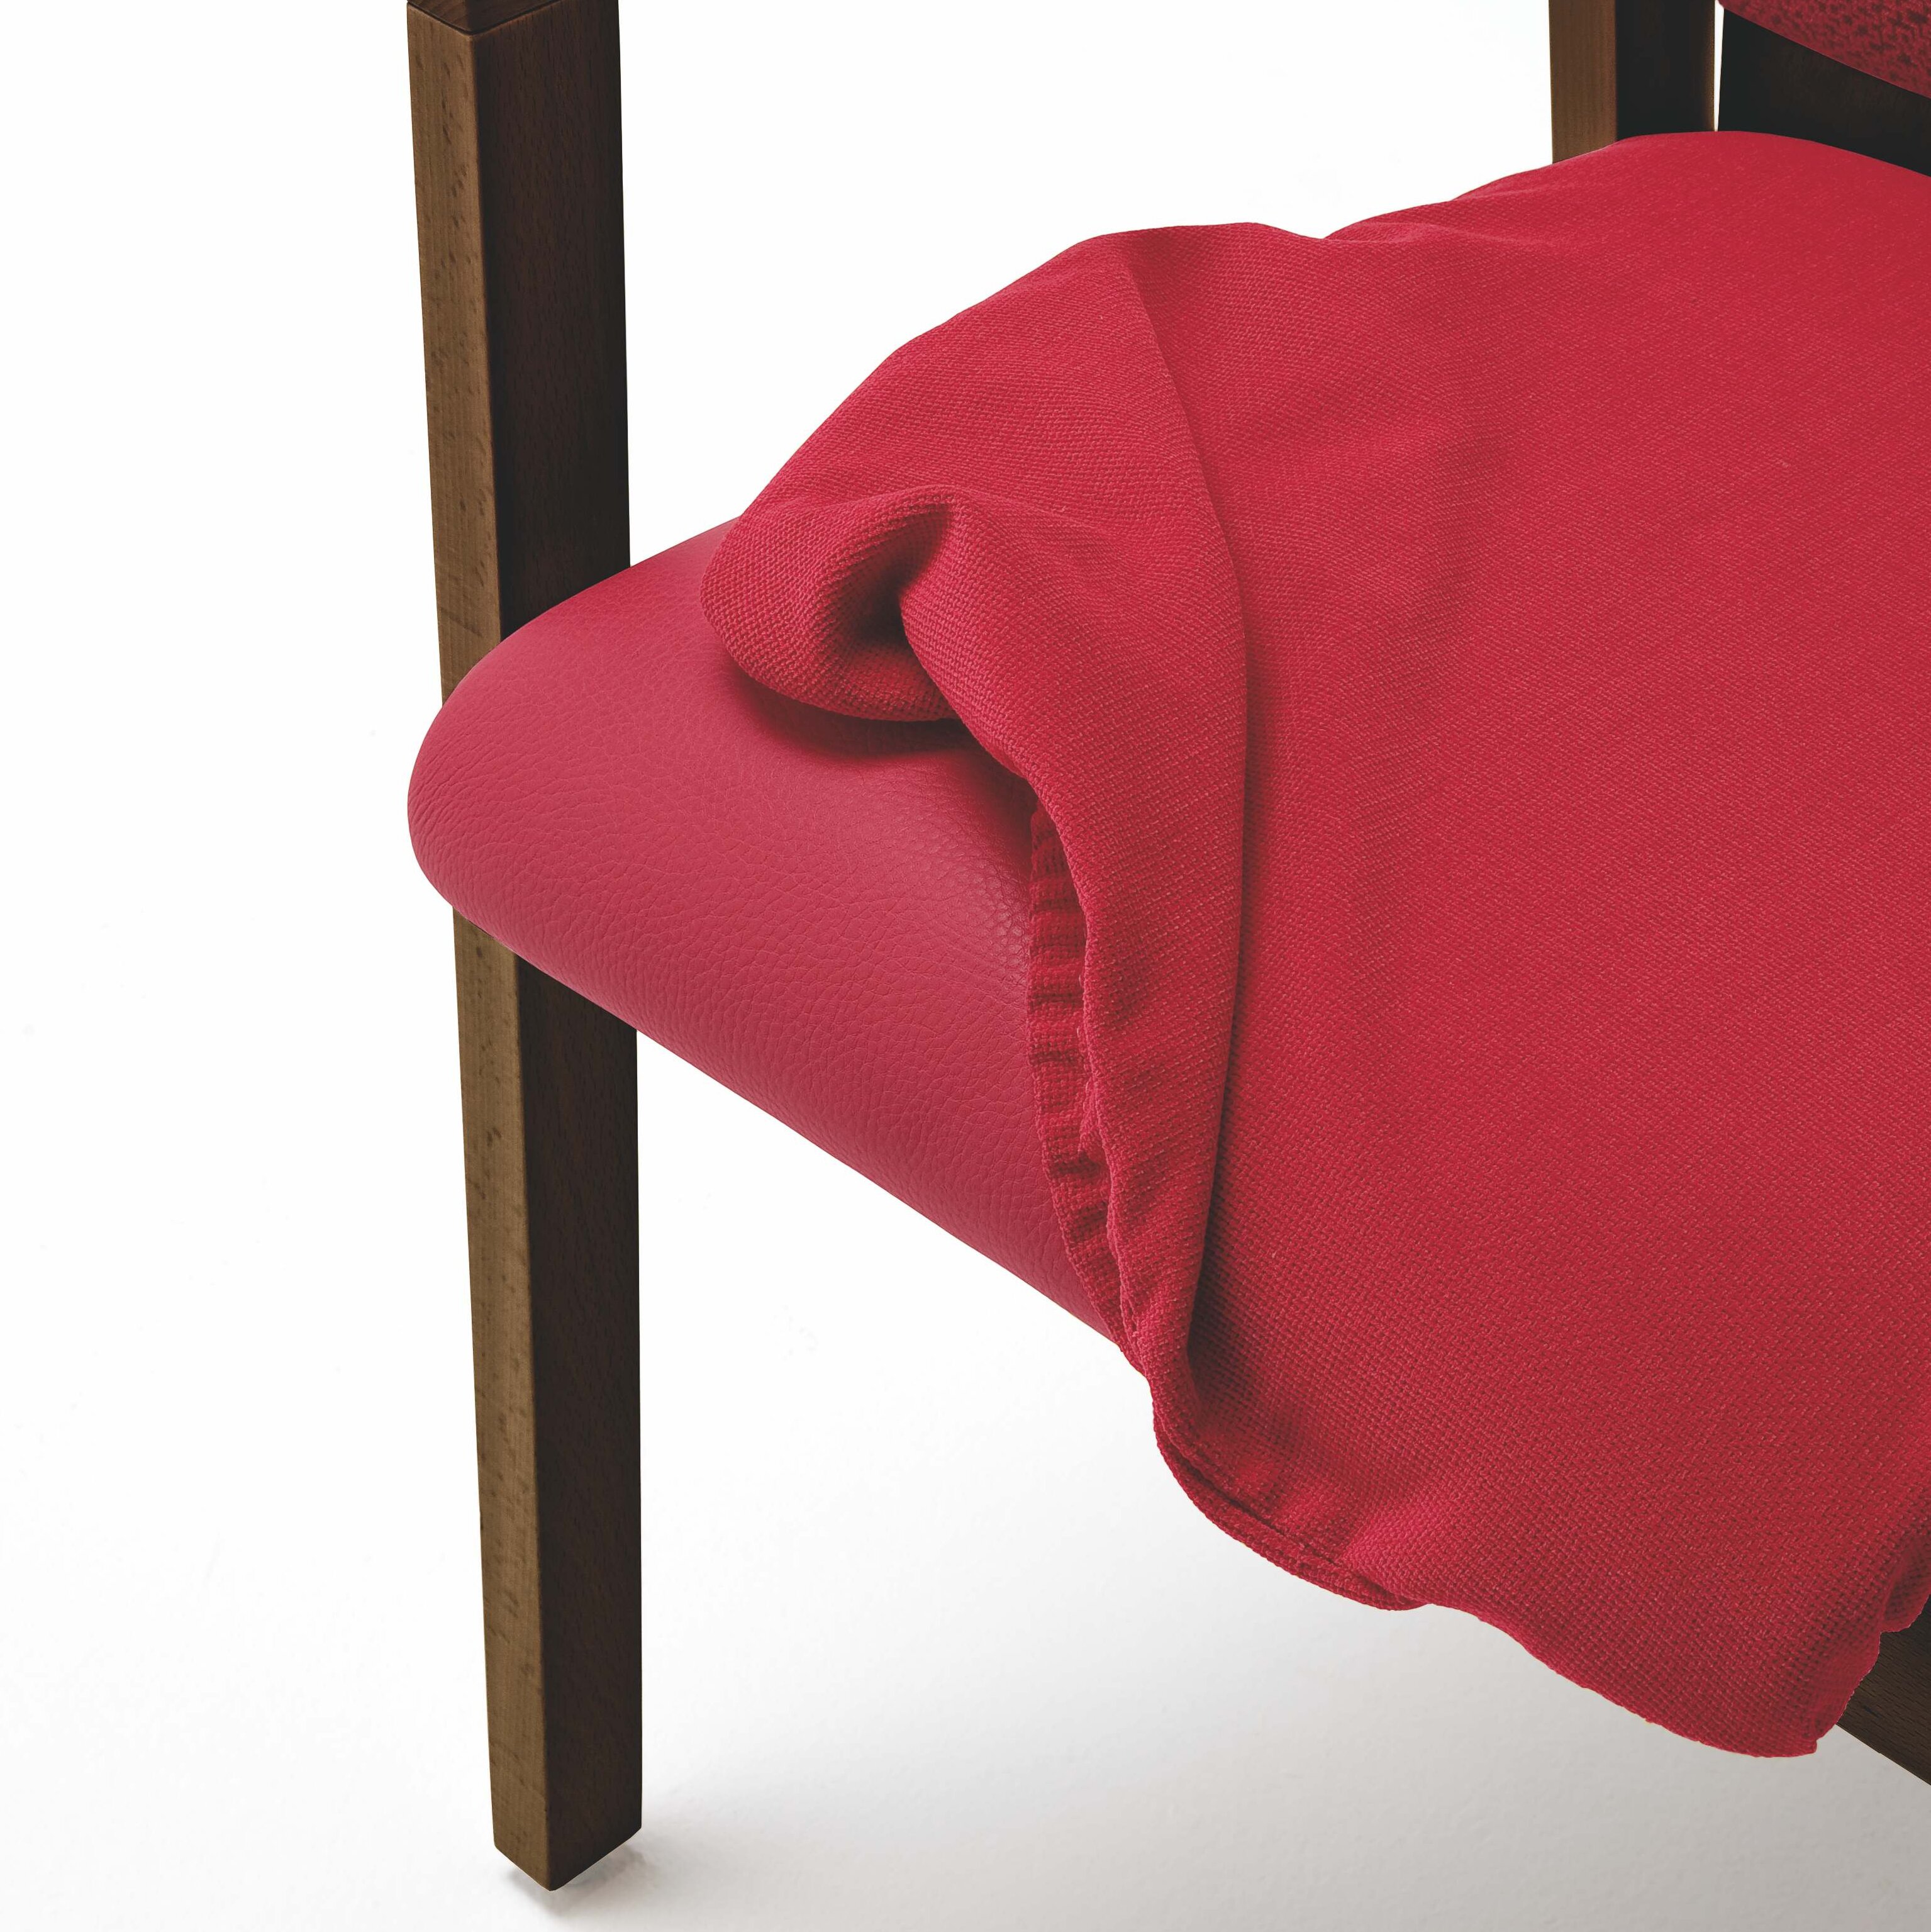 Grönemeyer Möbel für Alten- und Pflegeeinrichtungen | Evita | abnehmbare Sitzbezüge